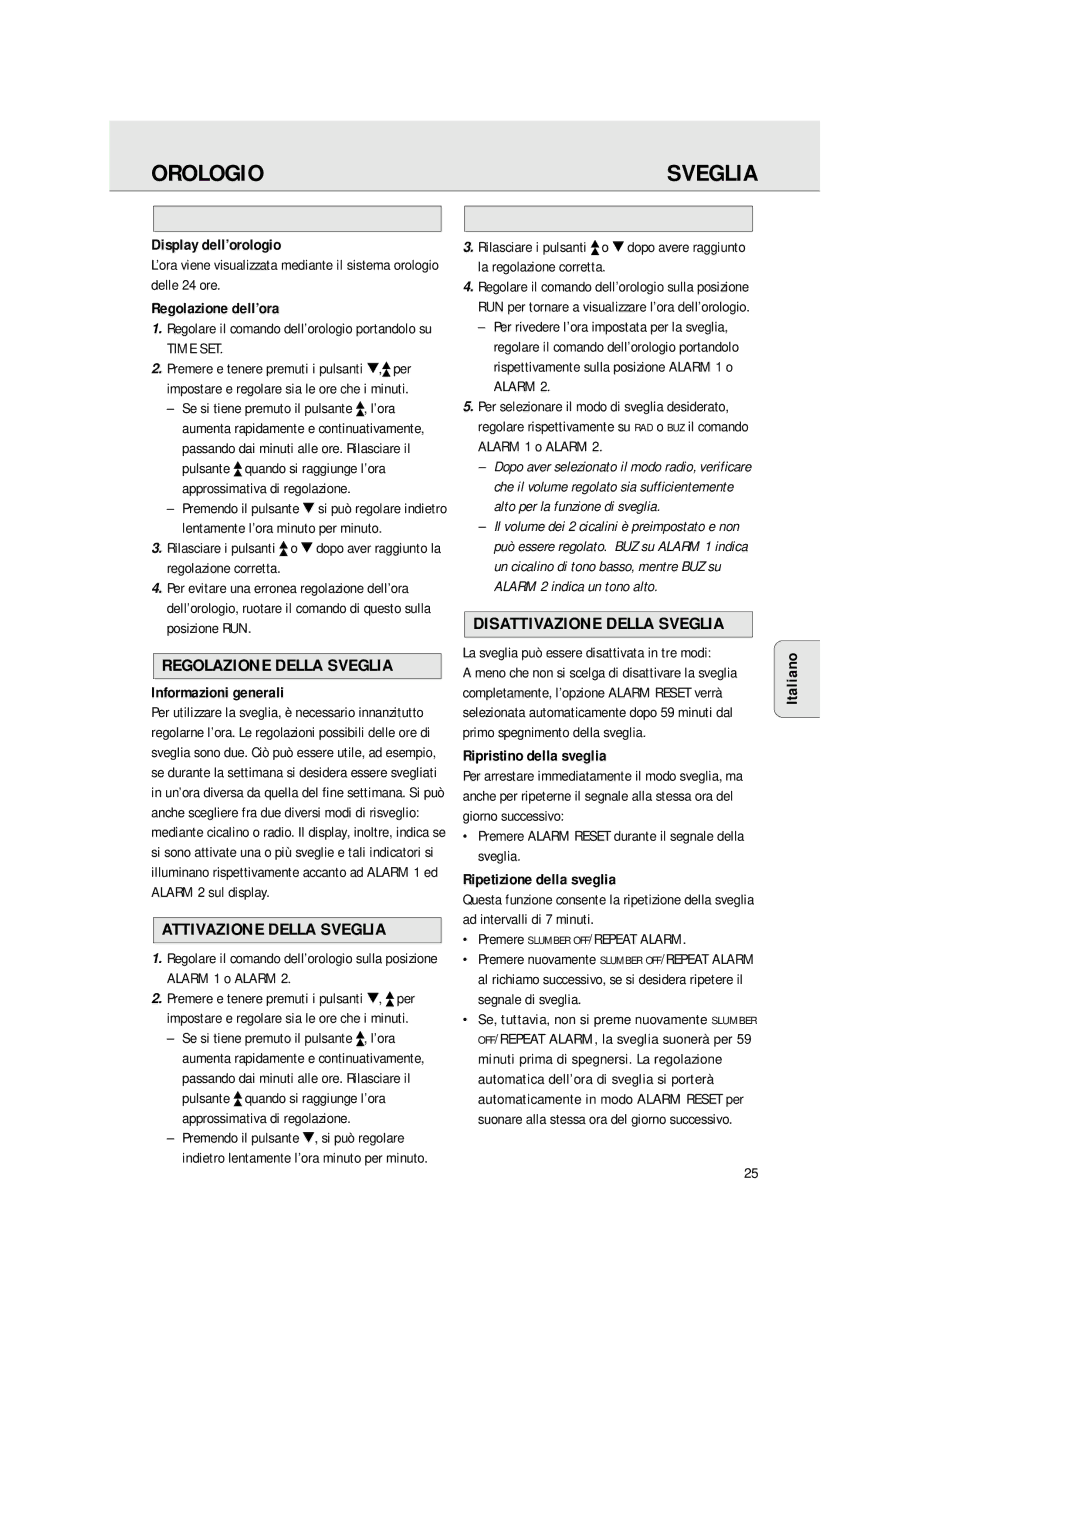 Philips AJ 3380 manual Orologio, Regolazione Della Sveglia, Attivazione Della Sveglia, Disattivazione Della Sveglia 